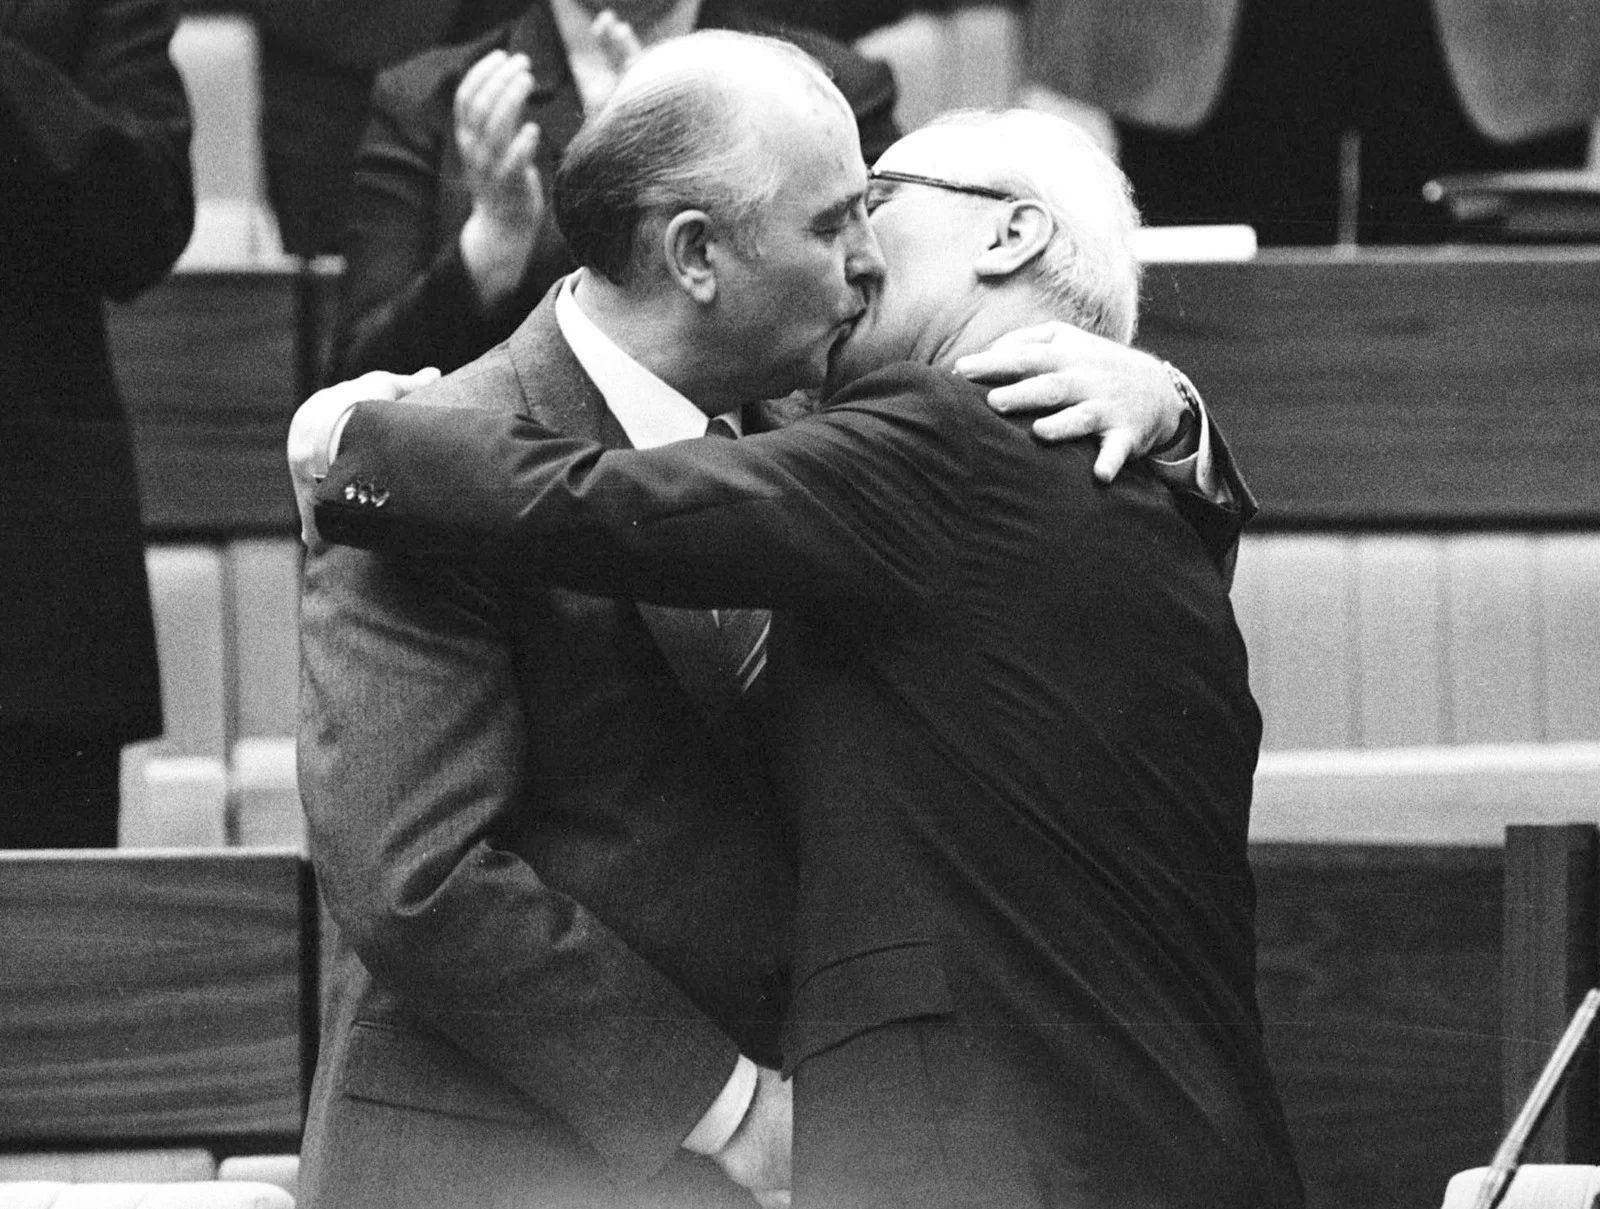 תמונת הנשיקה המפורסמת בין מיכיאל גורבצ'וב לבין אריך הונקר, מנהיג גרמנית המזרחית, לאחר בחירתו מחדש